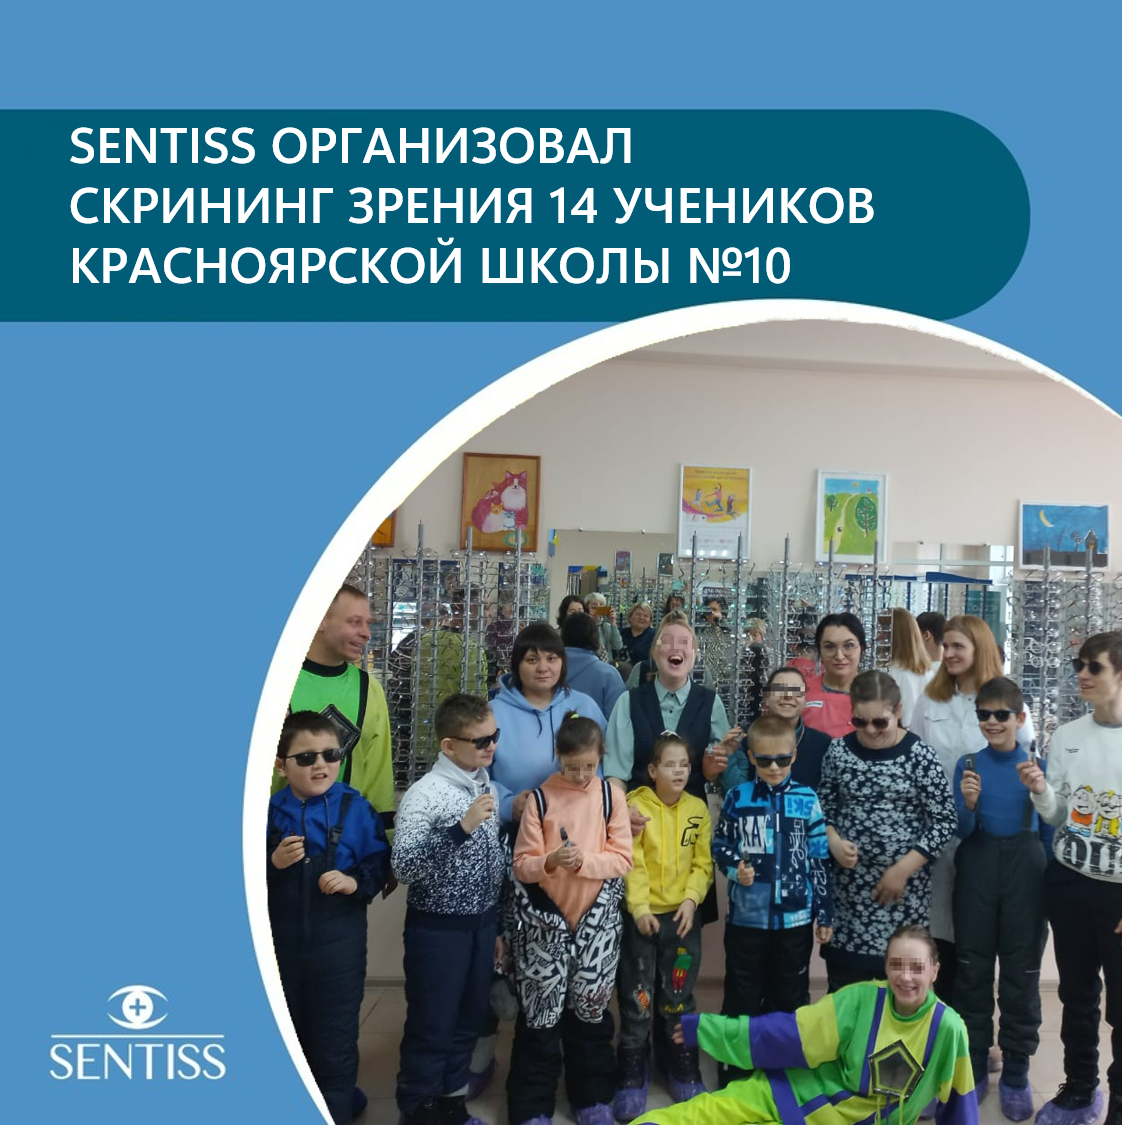 Sentiss организовал скрининг зрения учеников школы Красноярска